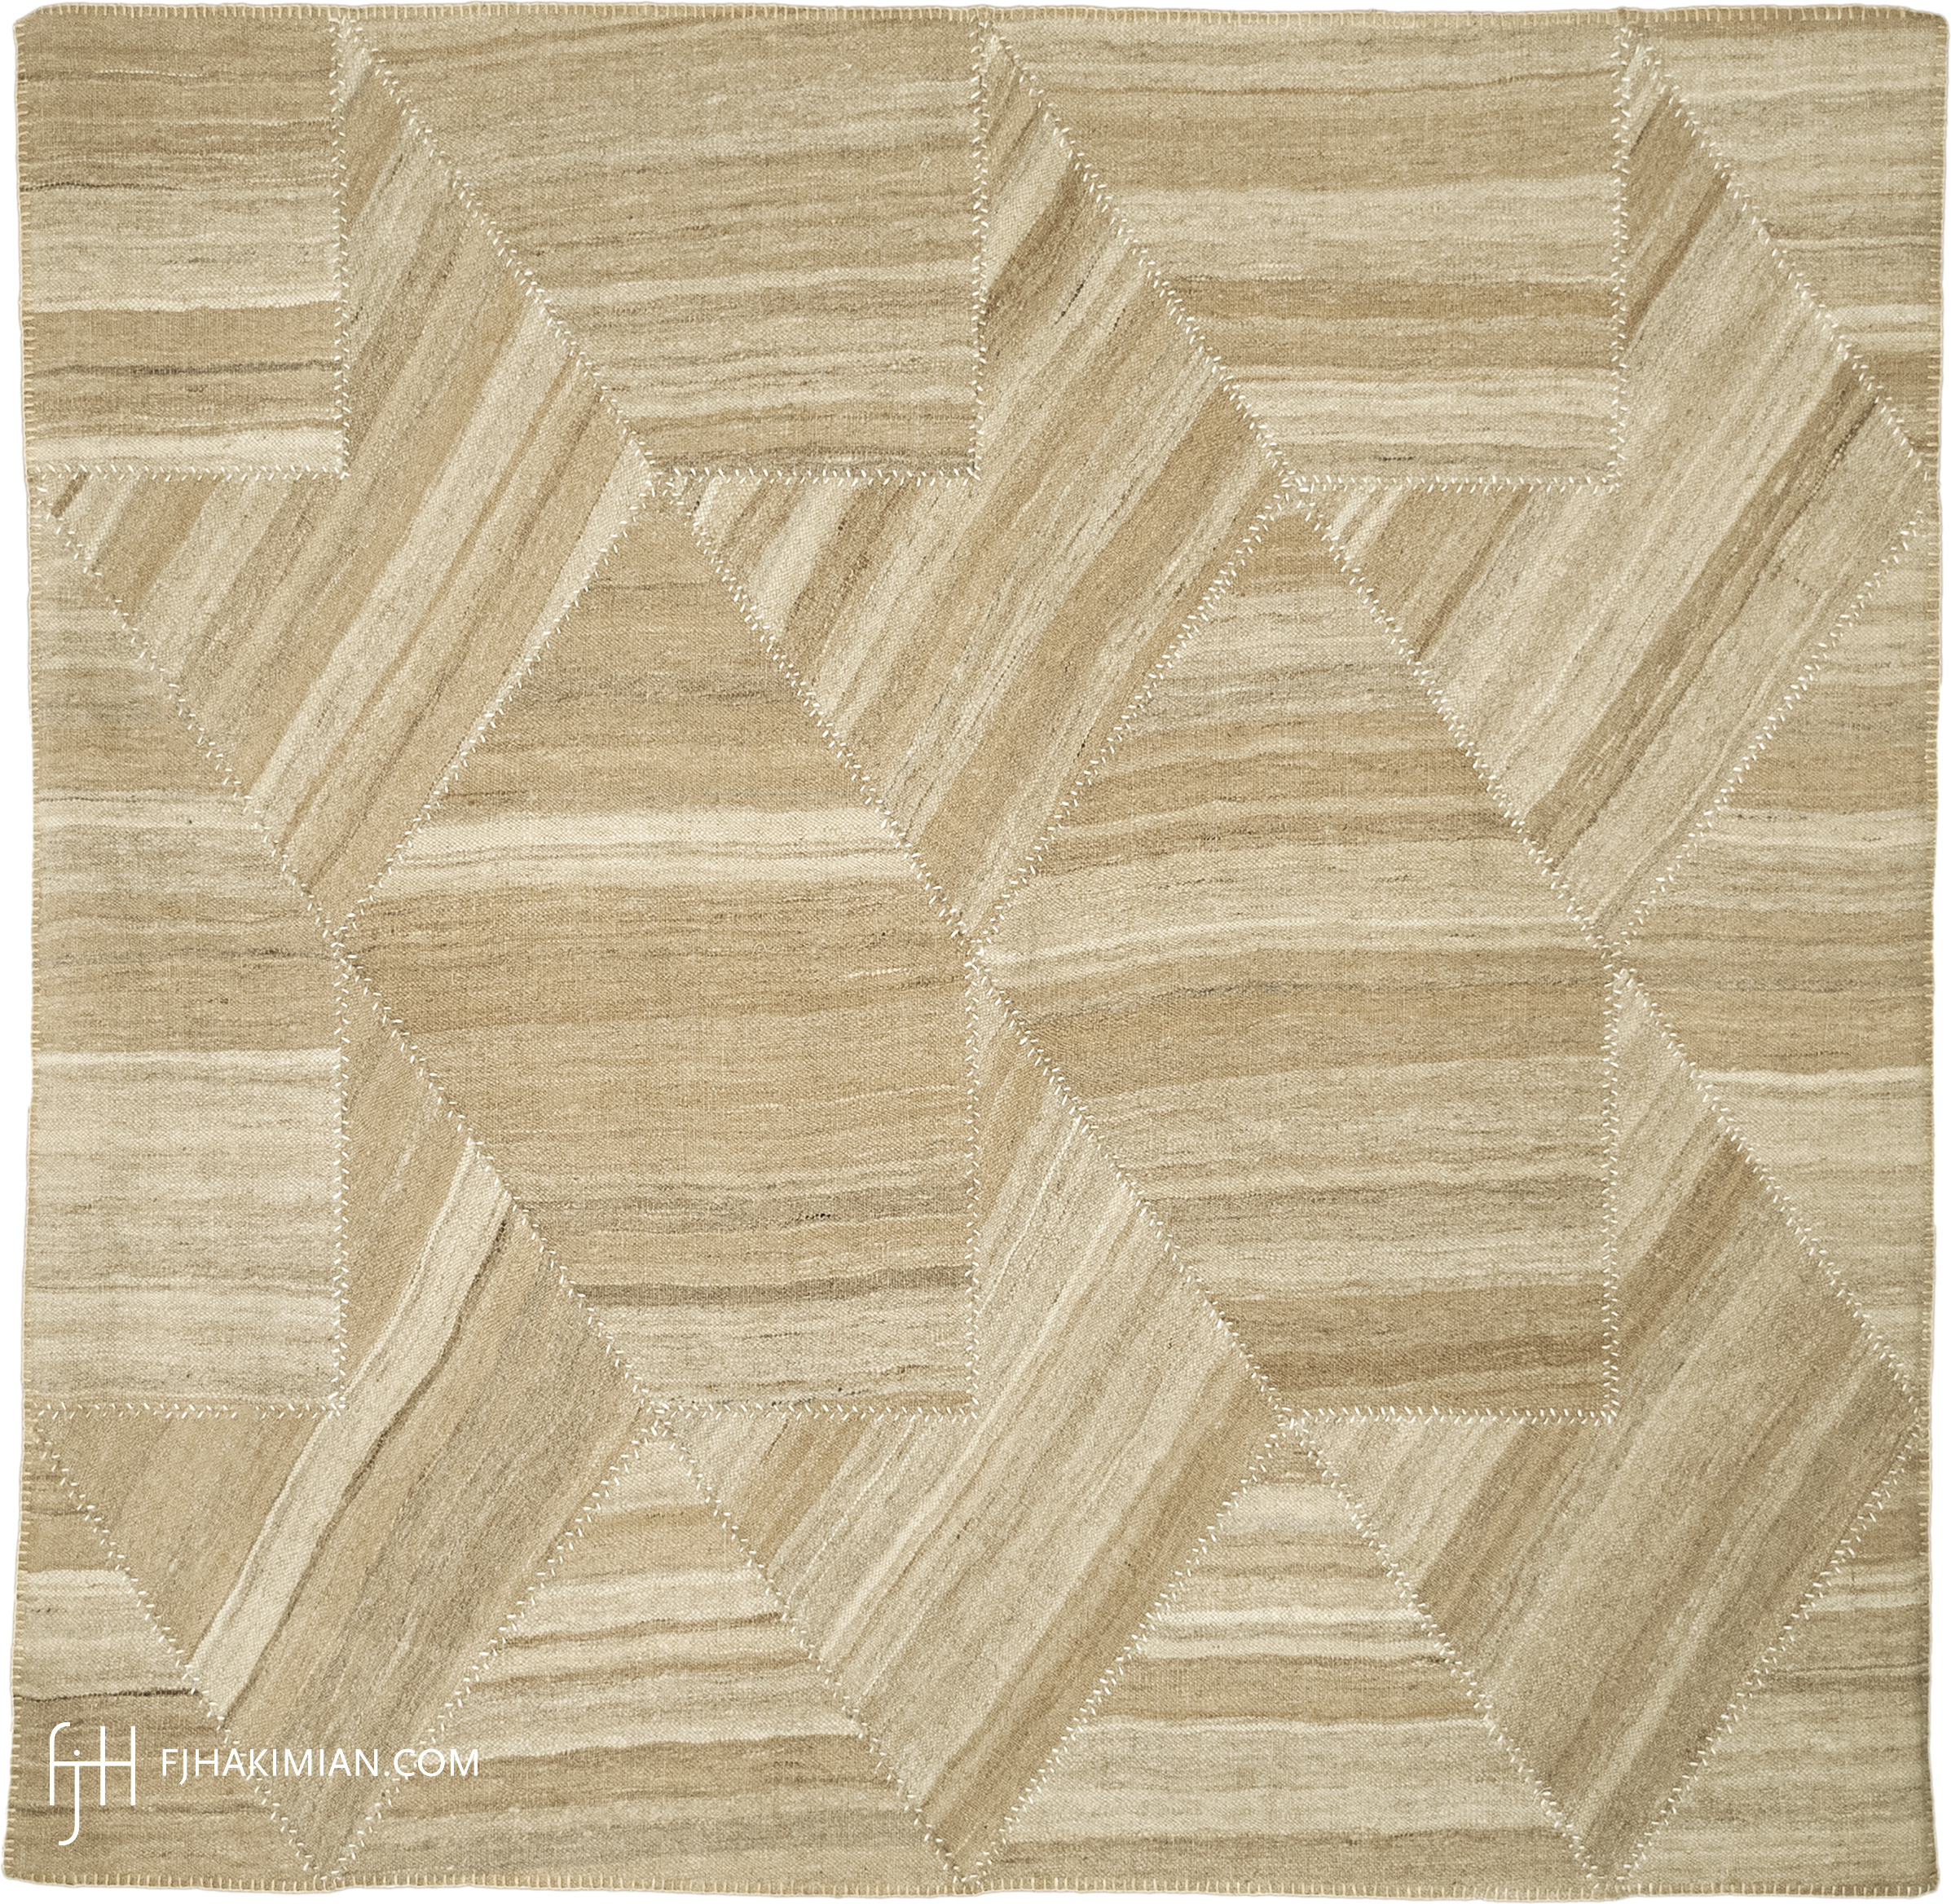 FJ Hakimian | 37386 | Custom Carpet